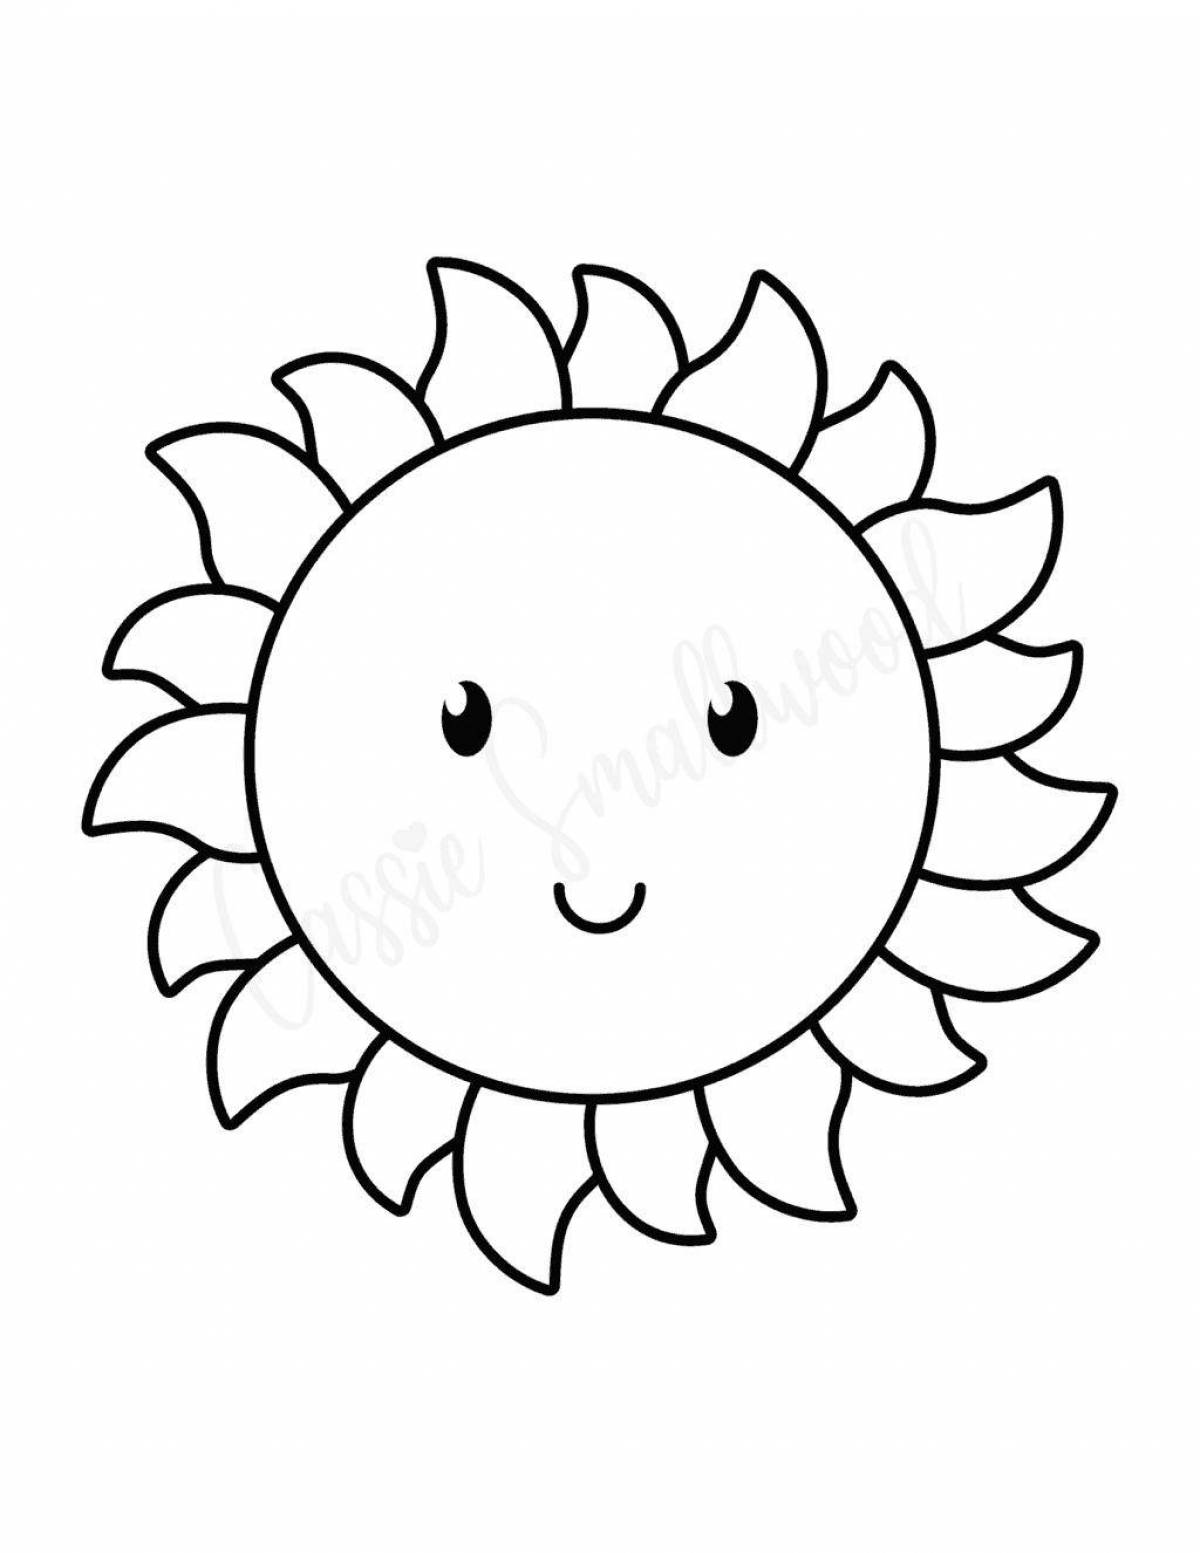 Великолепная раскраска солнце для детей 4-5 лет